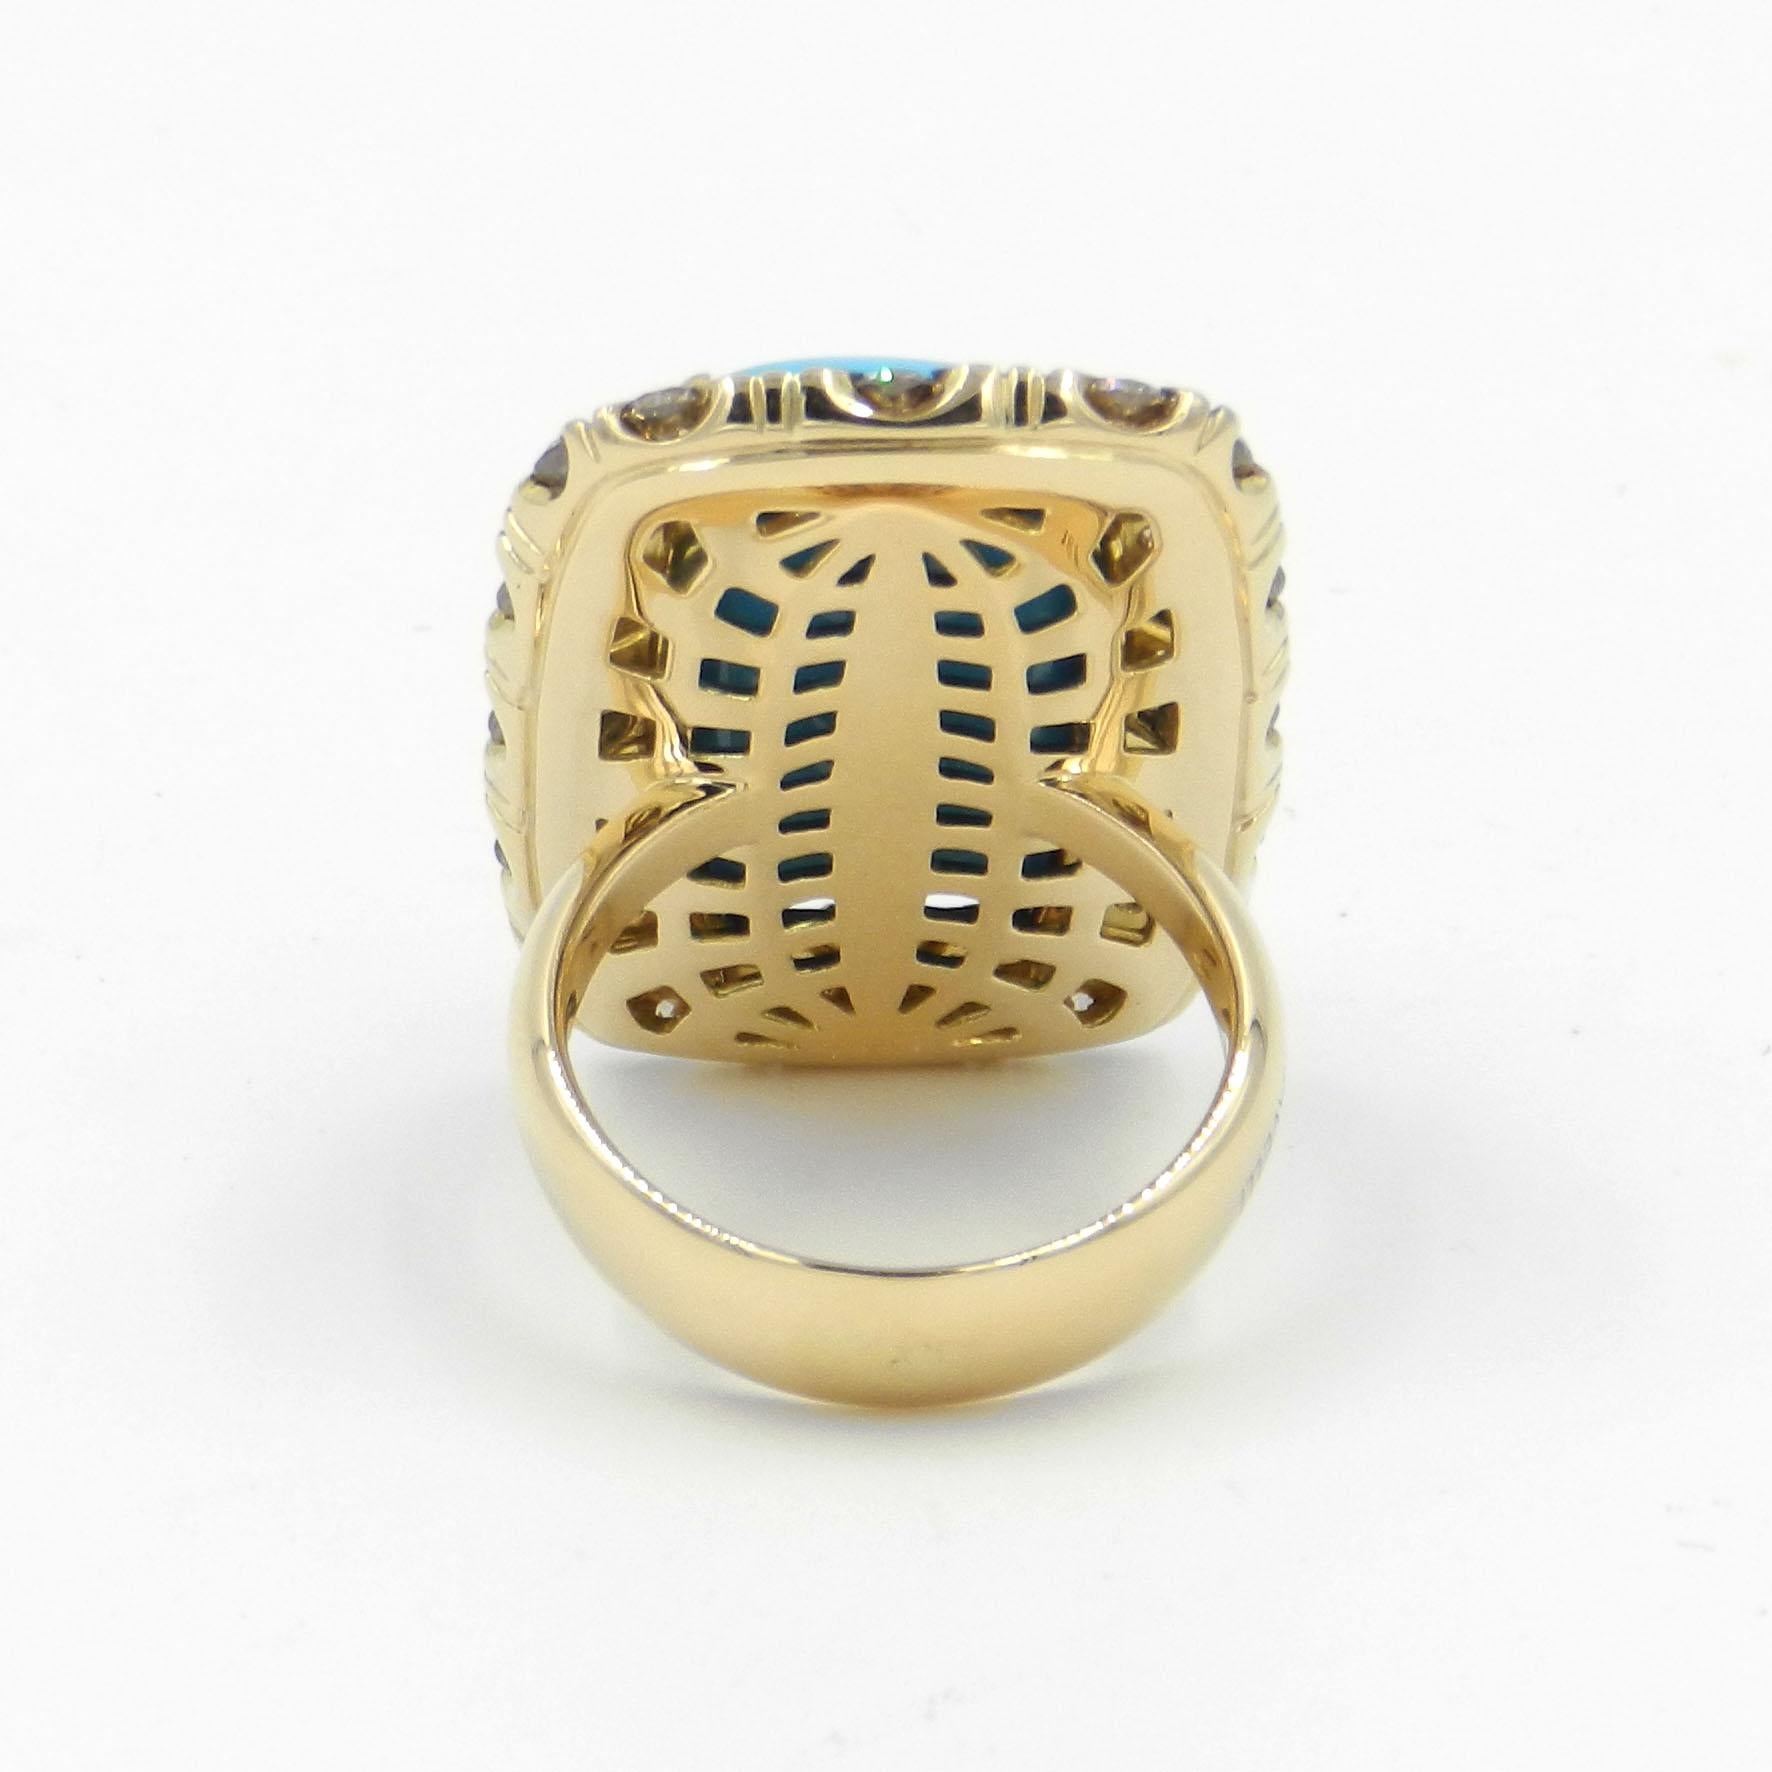 Der exquisite Ring aus 18 Kt. Gelbgold mit braunen Diamanten und Türkis ist ein wahrer Ausdruck von Luxus und Raffinesse. Lassen Sie uns einen Blick auf seine fesselnden Eigenschaften werfen:

MATERIAL: Dieser Ring ist sorgfältig aus 18 Kt. Gelbgold